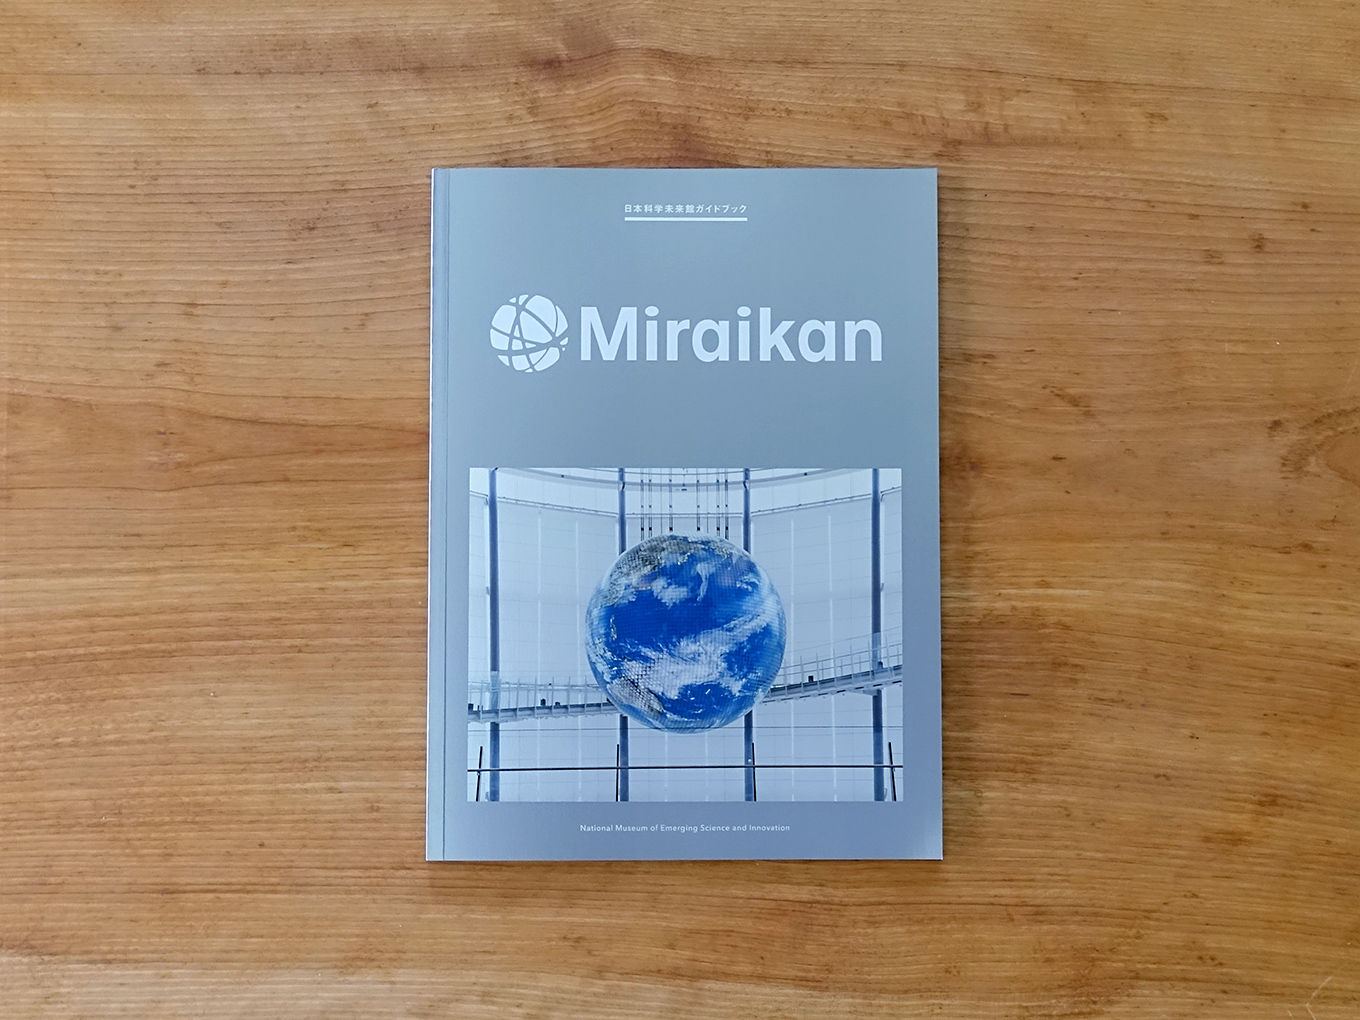 mirakan_guidebook1